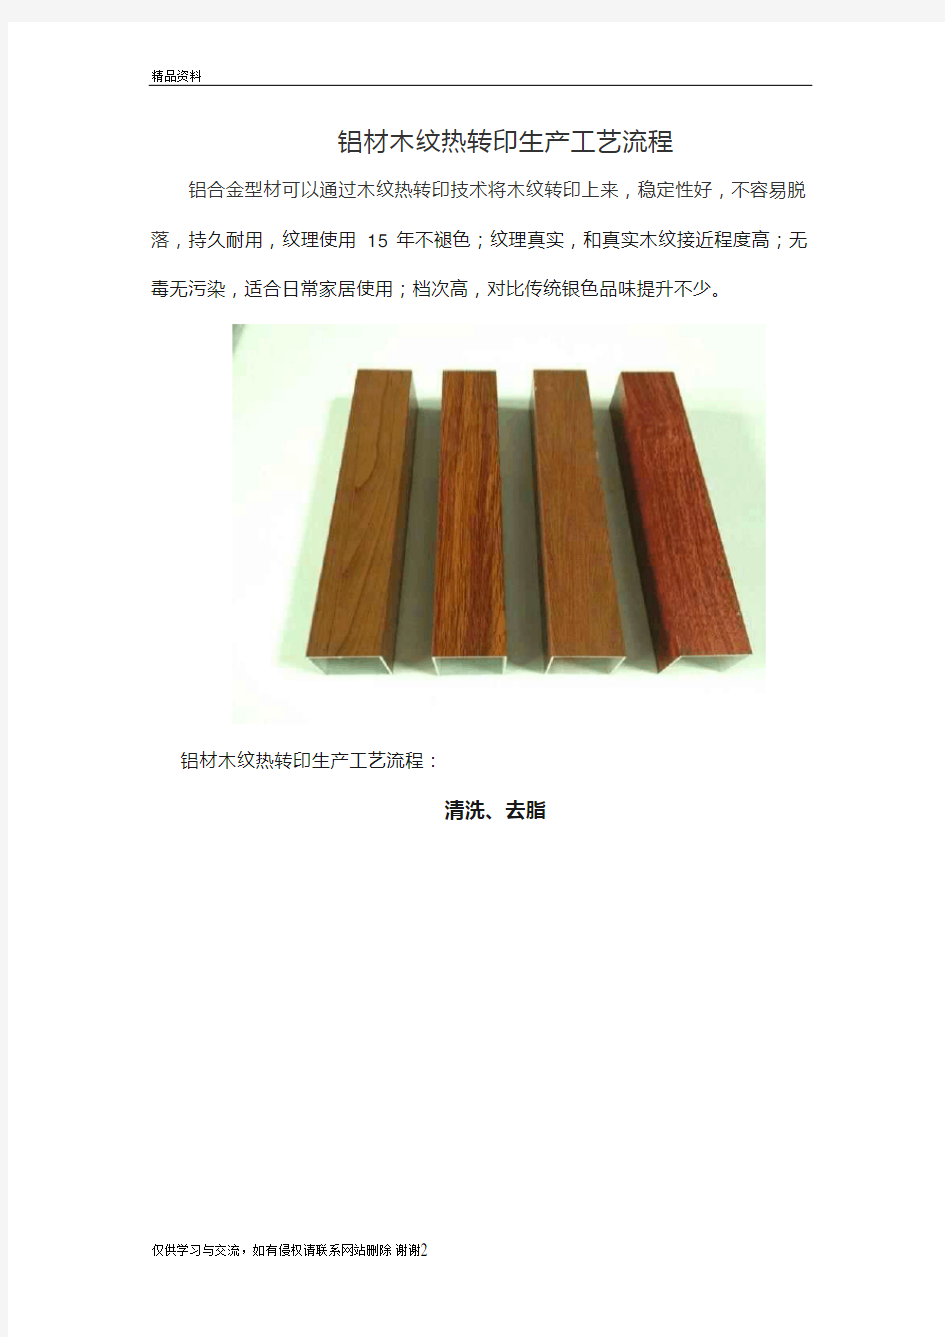 铝材木纹热转印生产工艺流程演示教学